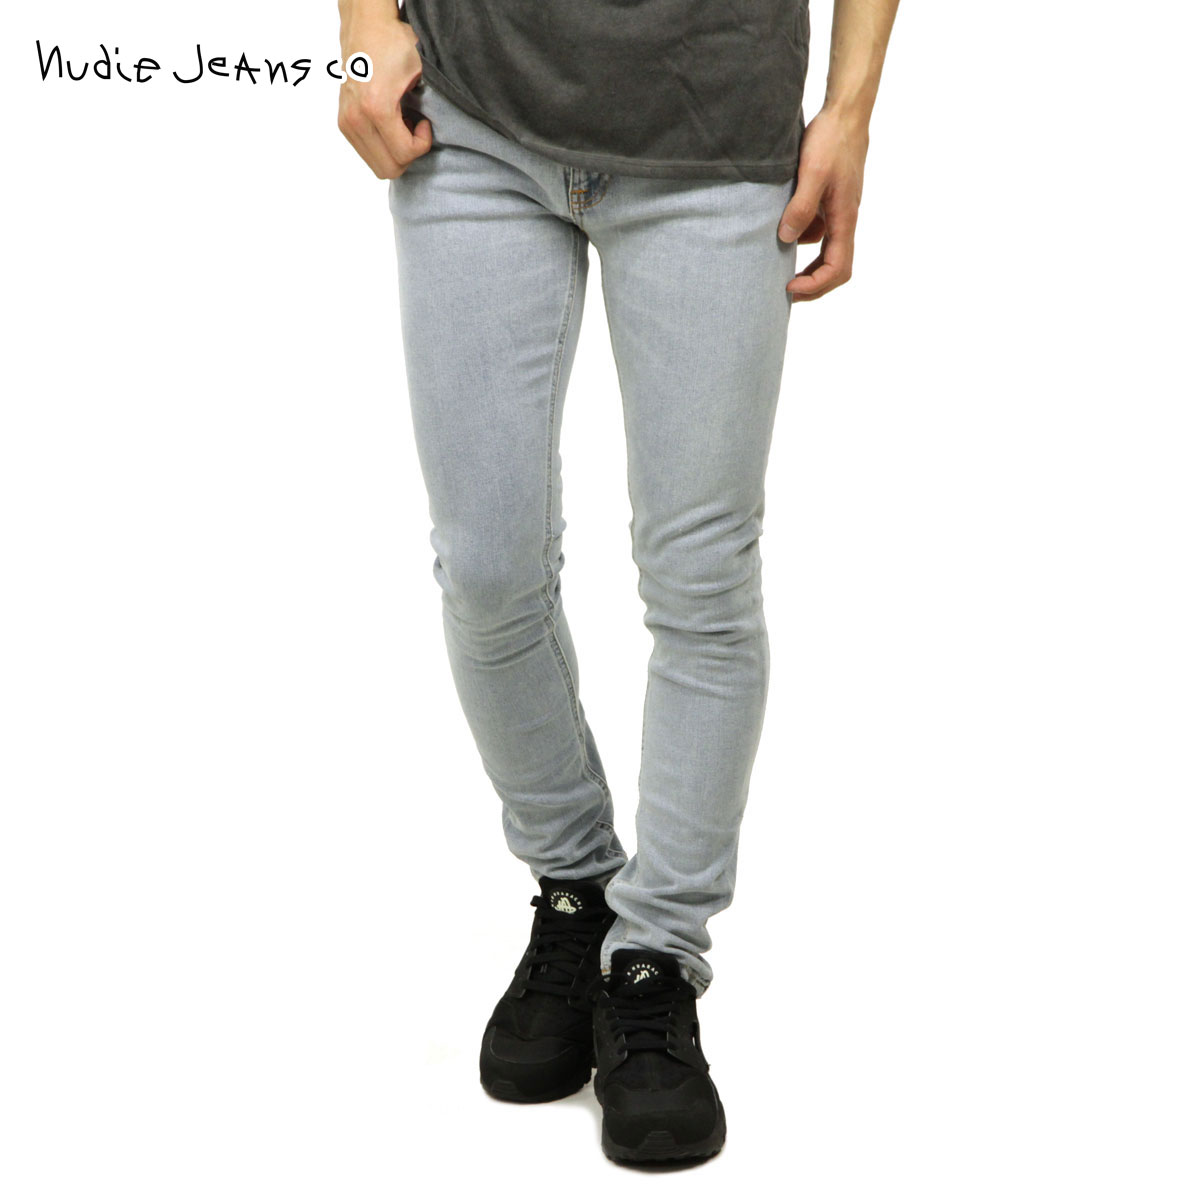 ヌーディージーンズ ジーンズ メンズ 正規販売店 Nudie Jeans ジーパン スキニーリン SKINNY LIN JEANS SUMMER BREEZE 884 1126680